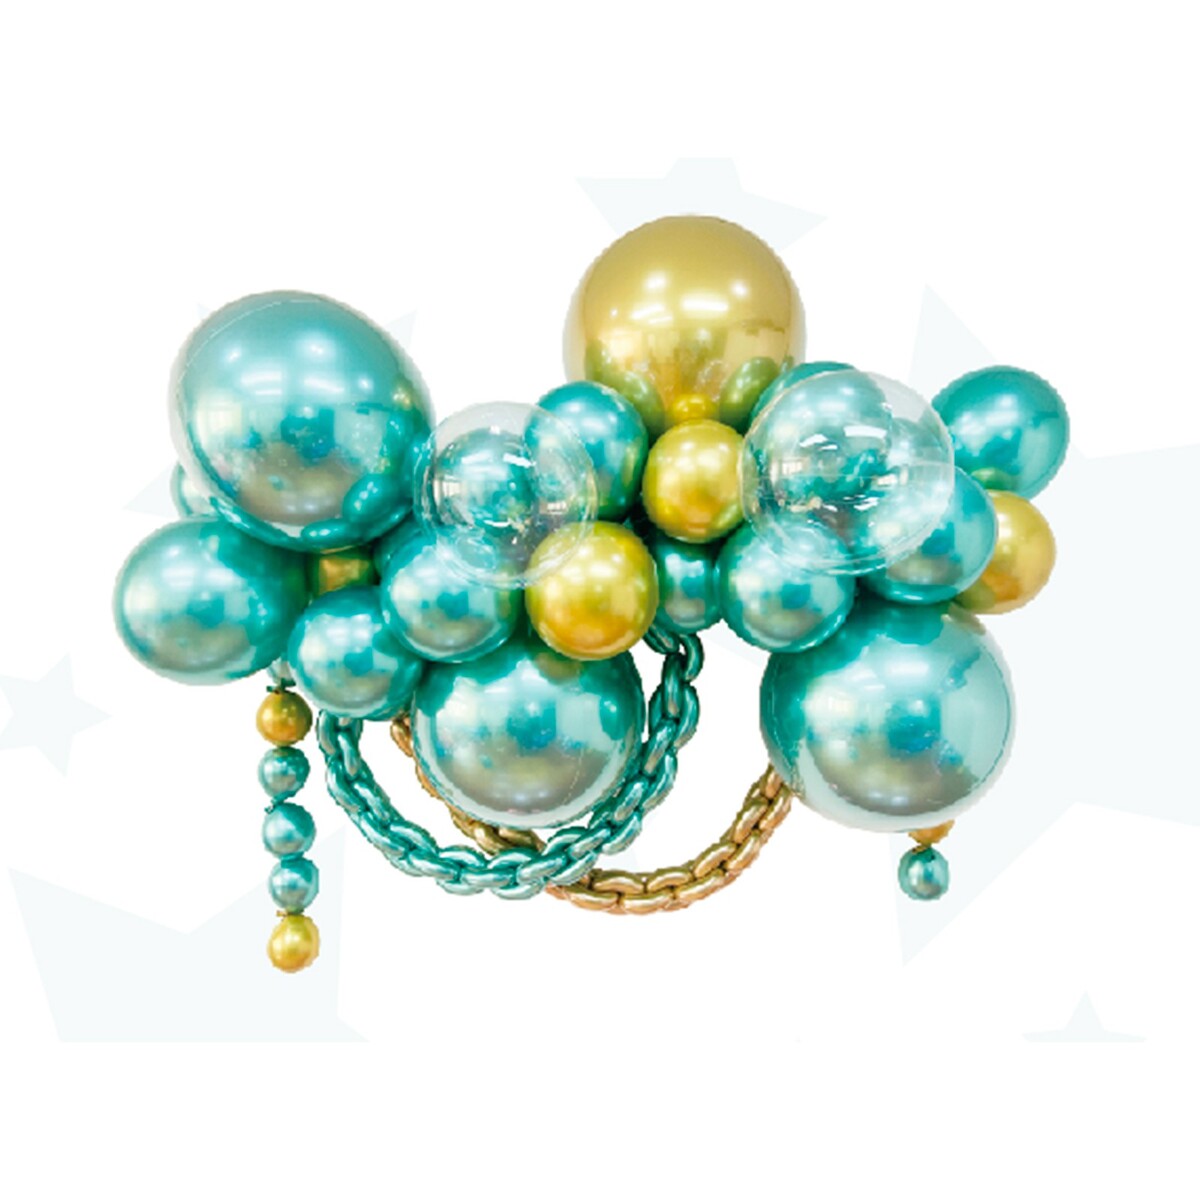 Набор для создания композиций из воздушных шаров, набор 52 шт., золото, зеленый набор для создания композиций из воздушных шаров набор 52 шт голубой песок бирюза